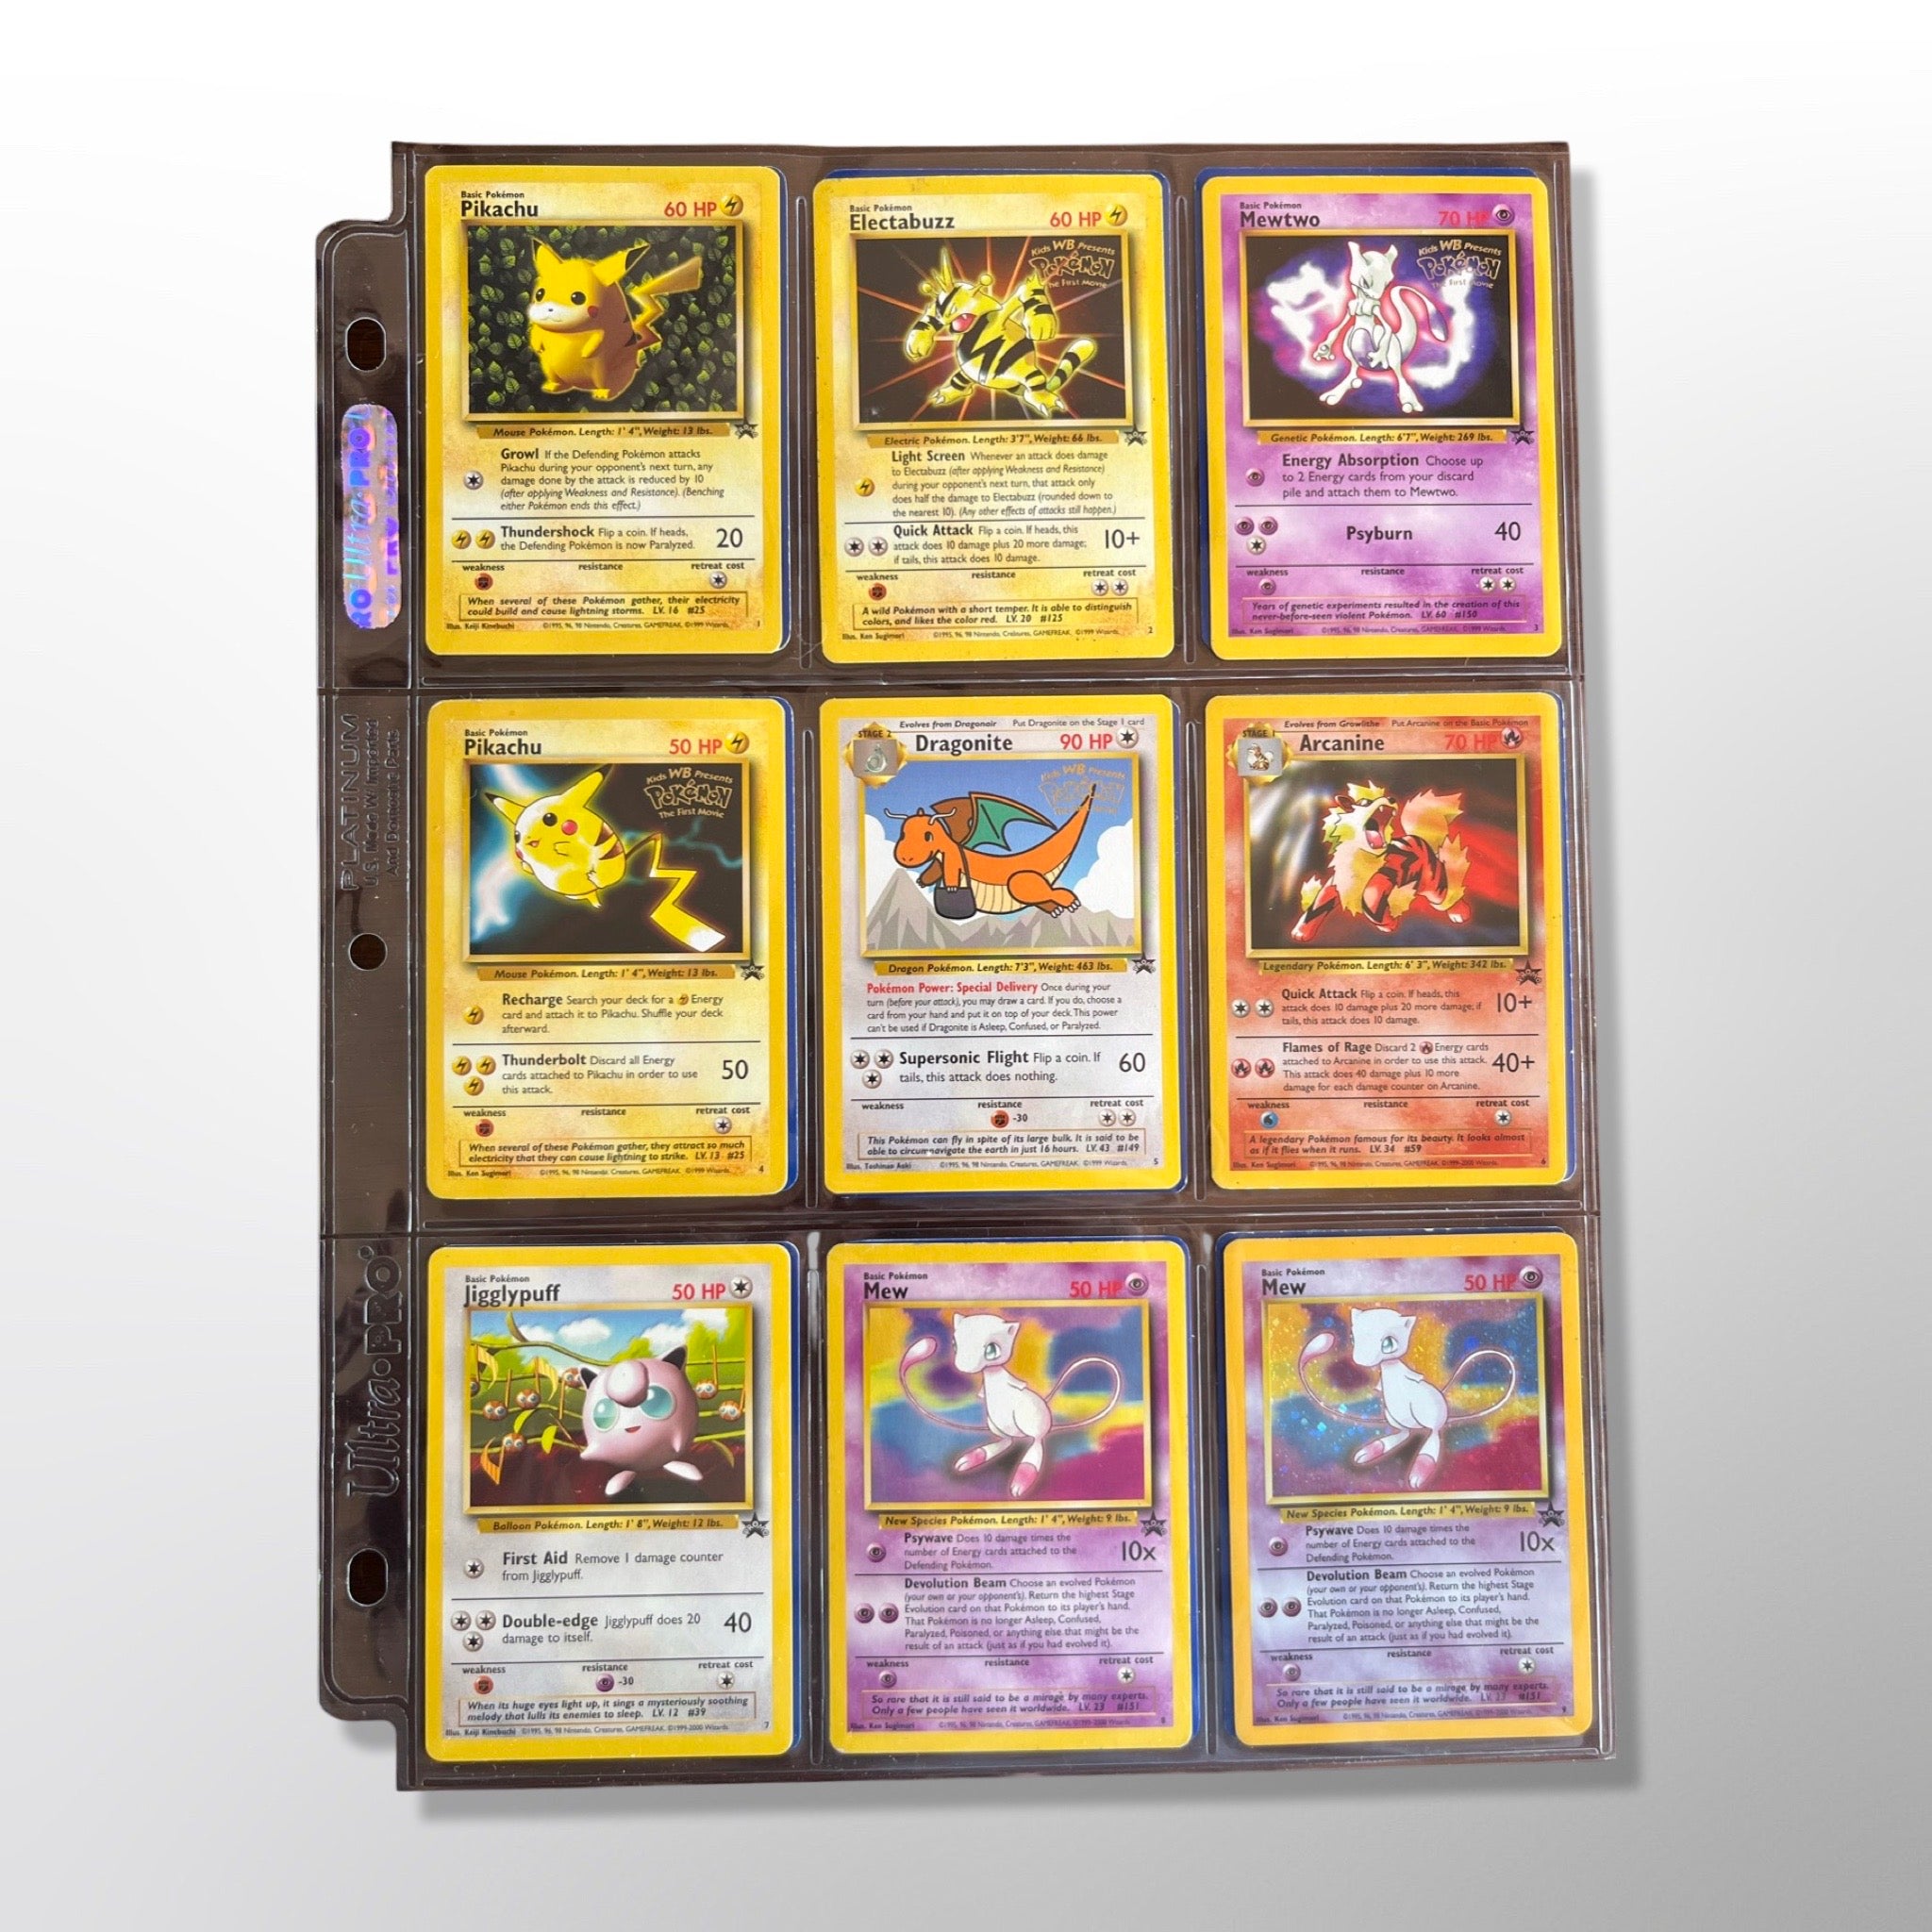 Mew - Pokemon Promo Cards - Pokemon